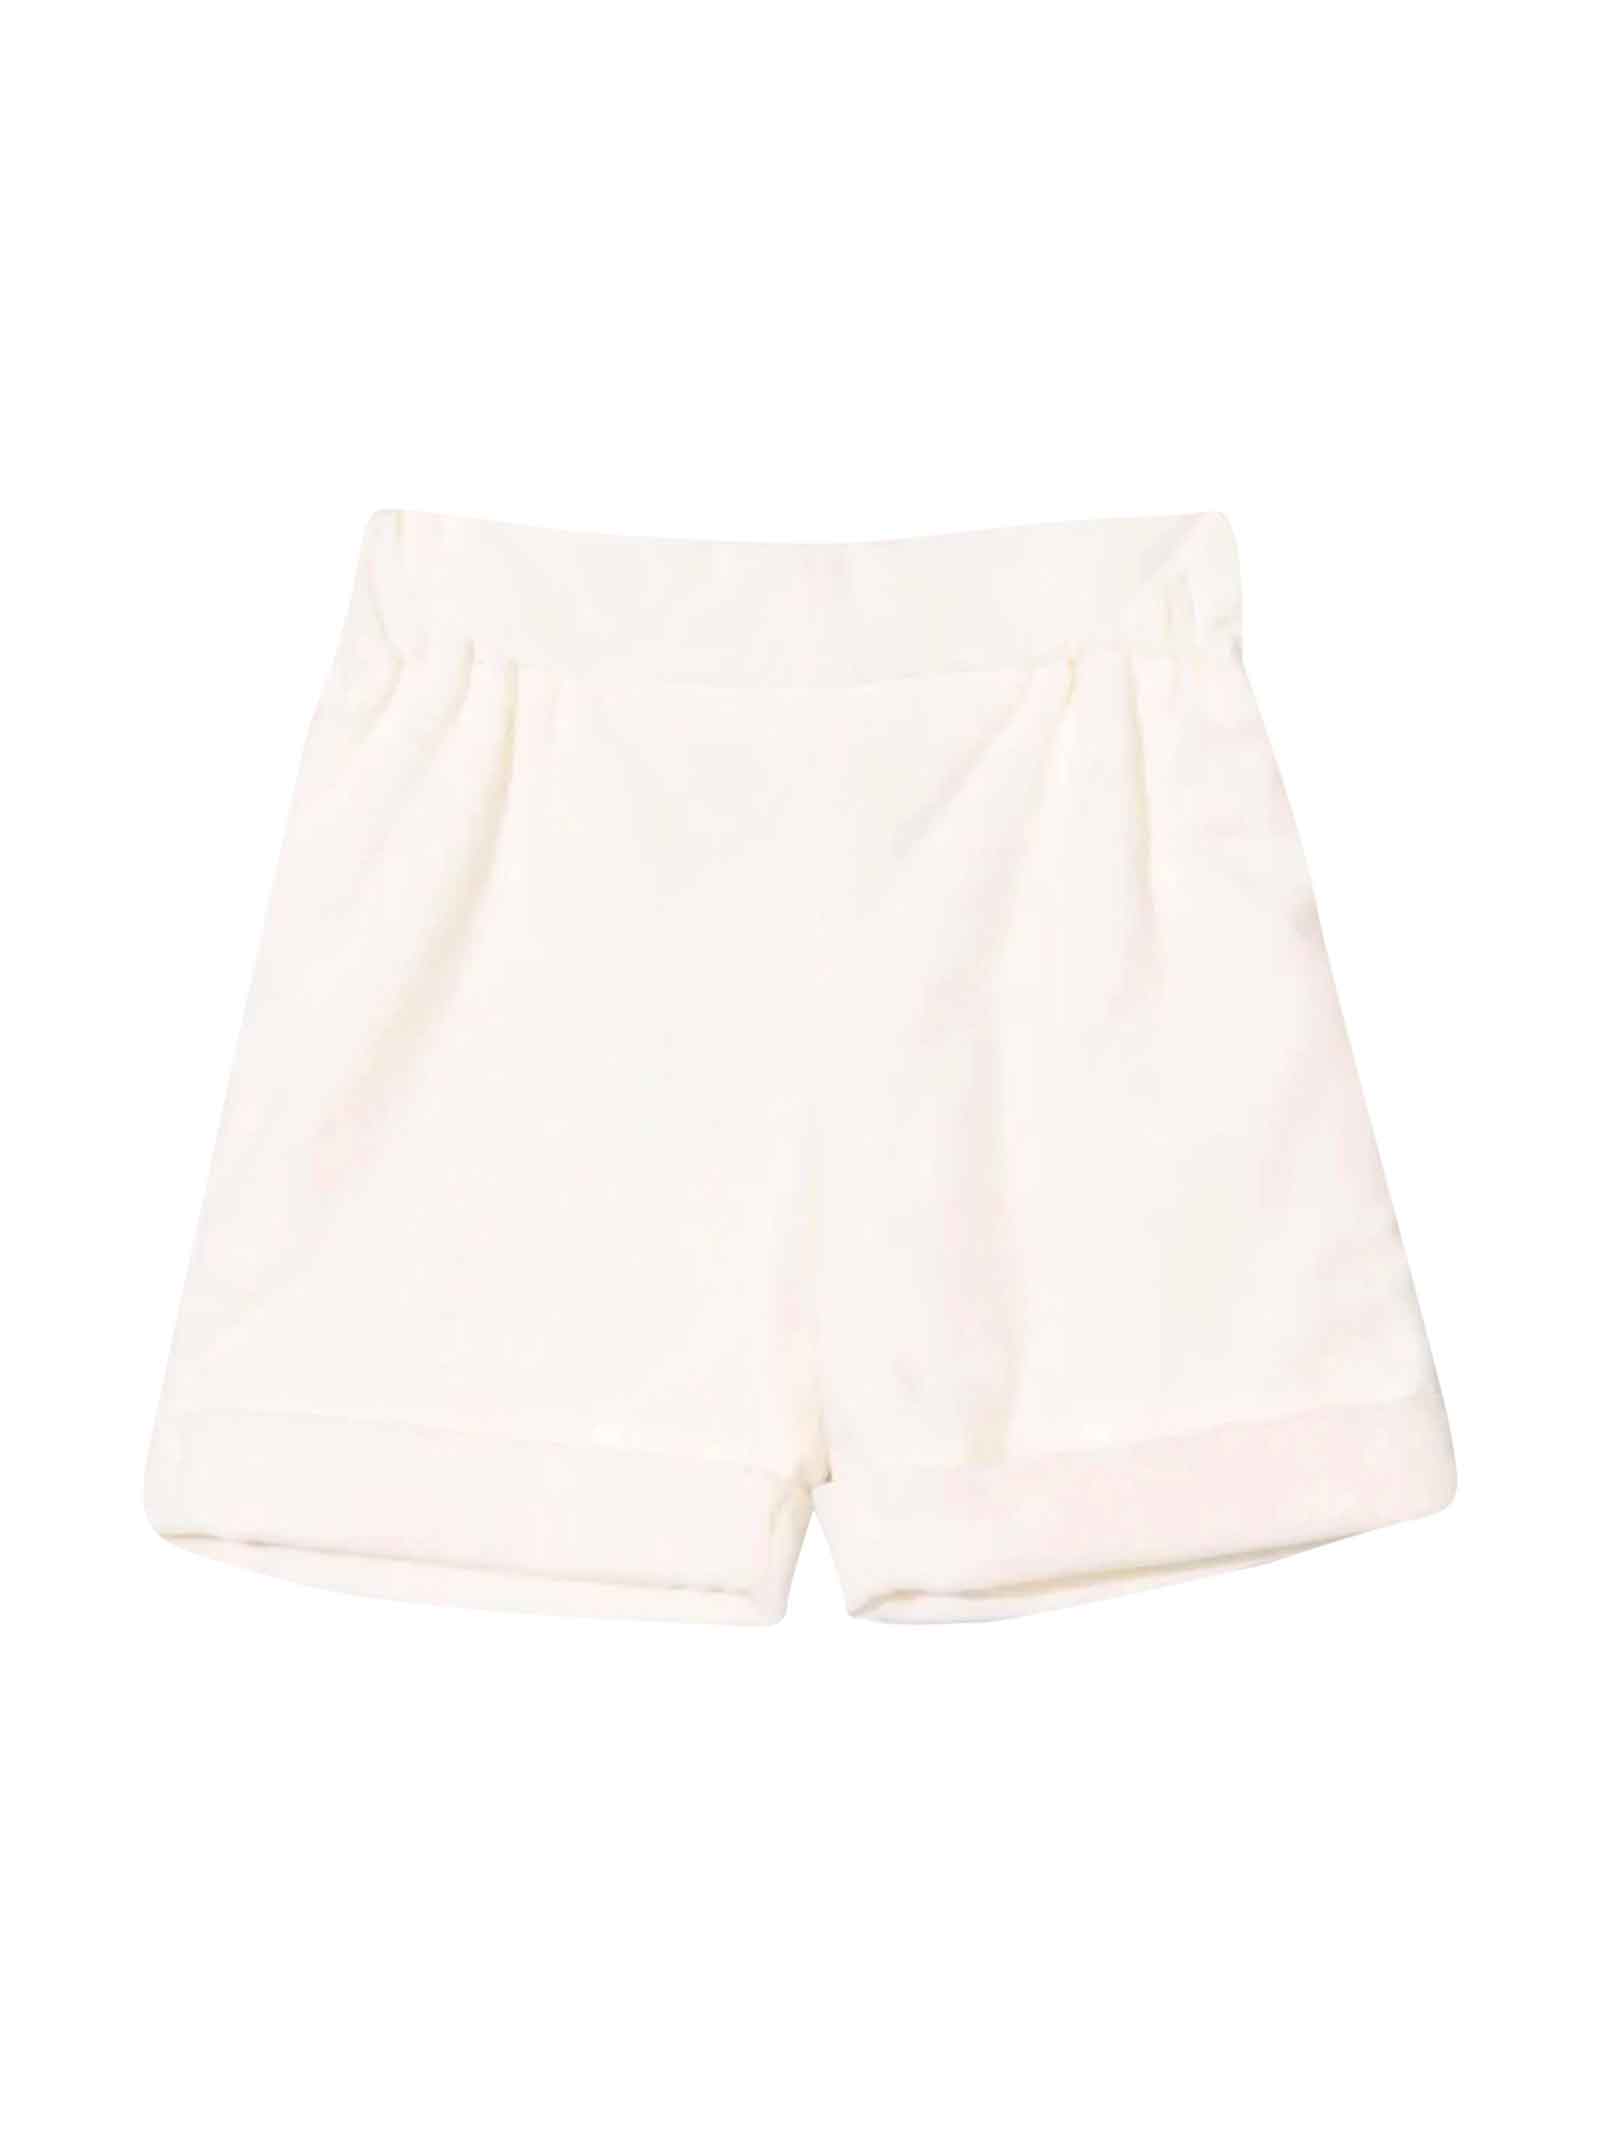 La stupenderia Unisex White Shorts